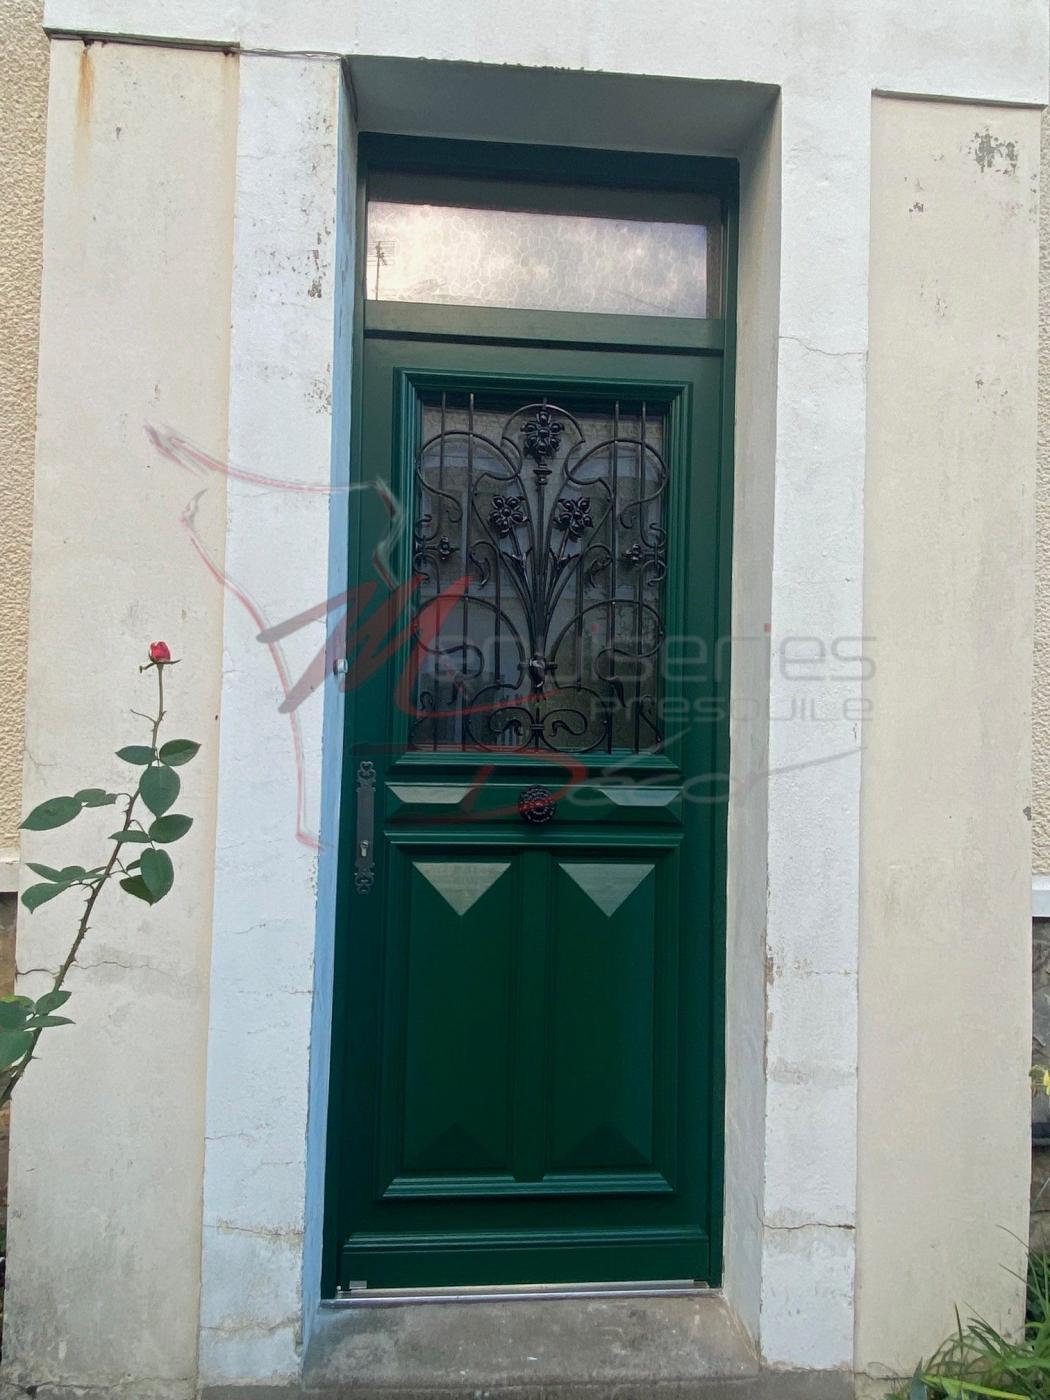 Porte d'entrée Bel'm bois, reproduction à l'identique et réutilisation de la grille de l'ancienne porte